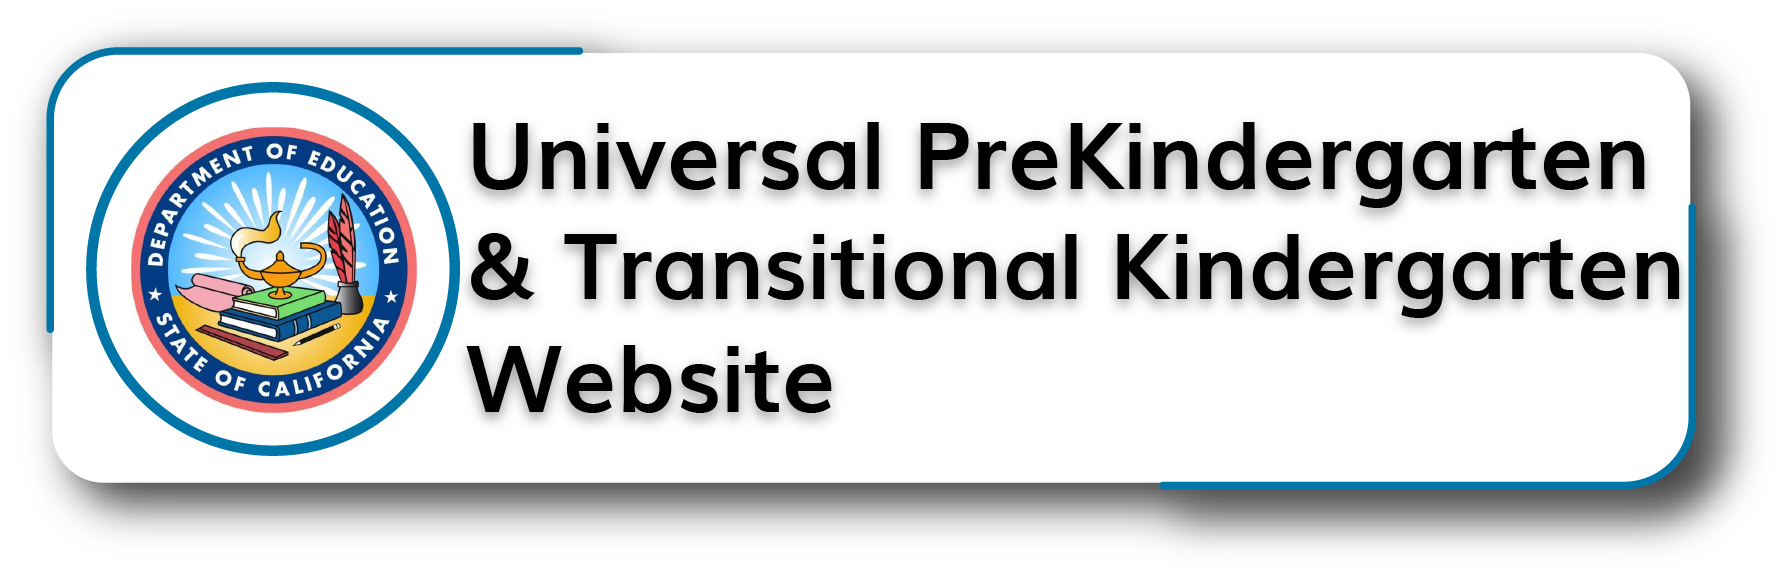 Universal PreKindergarten and Transitional KindergartenWebsite Button